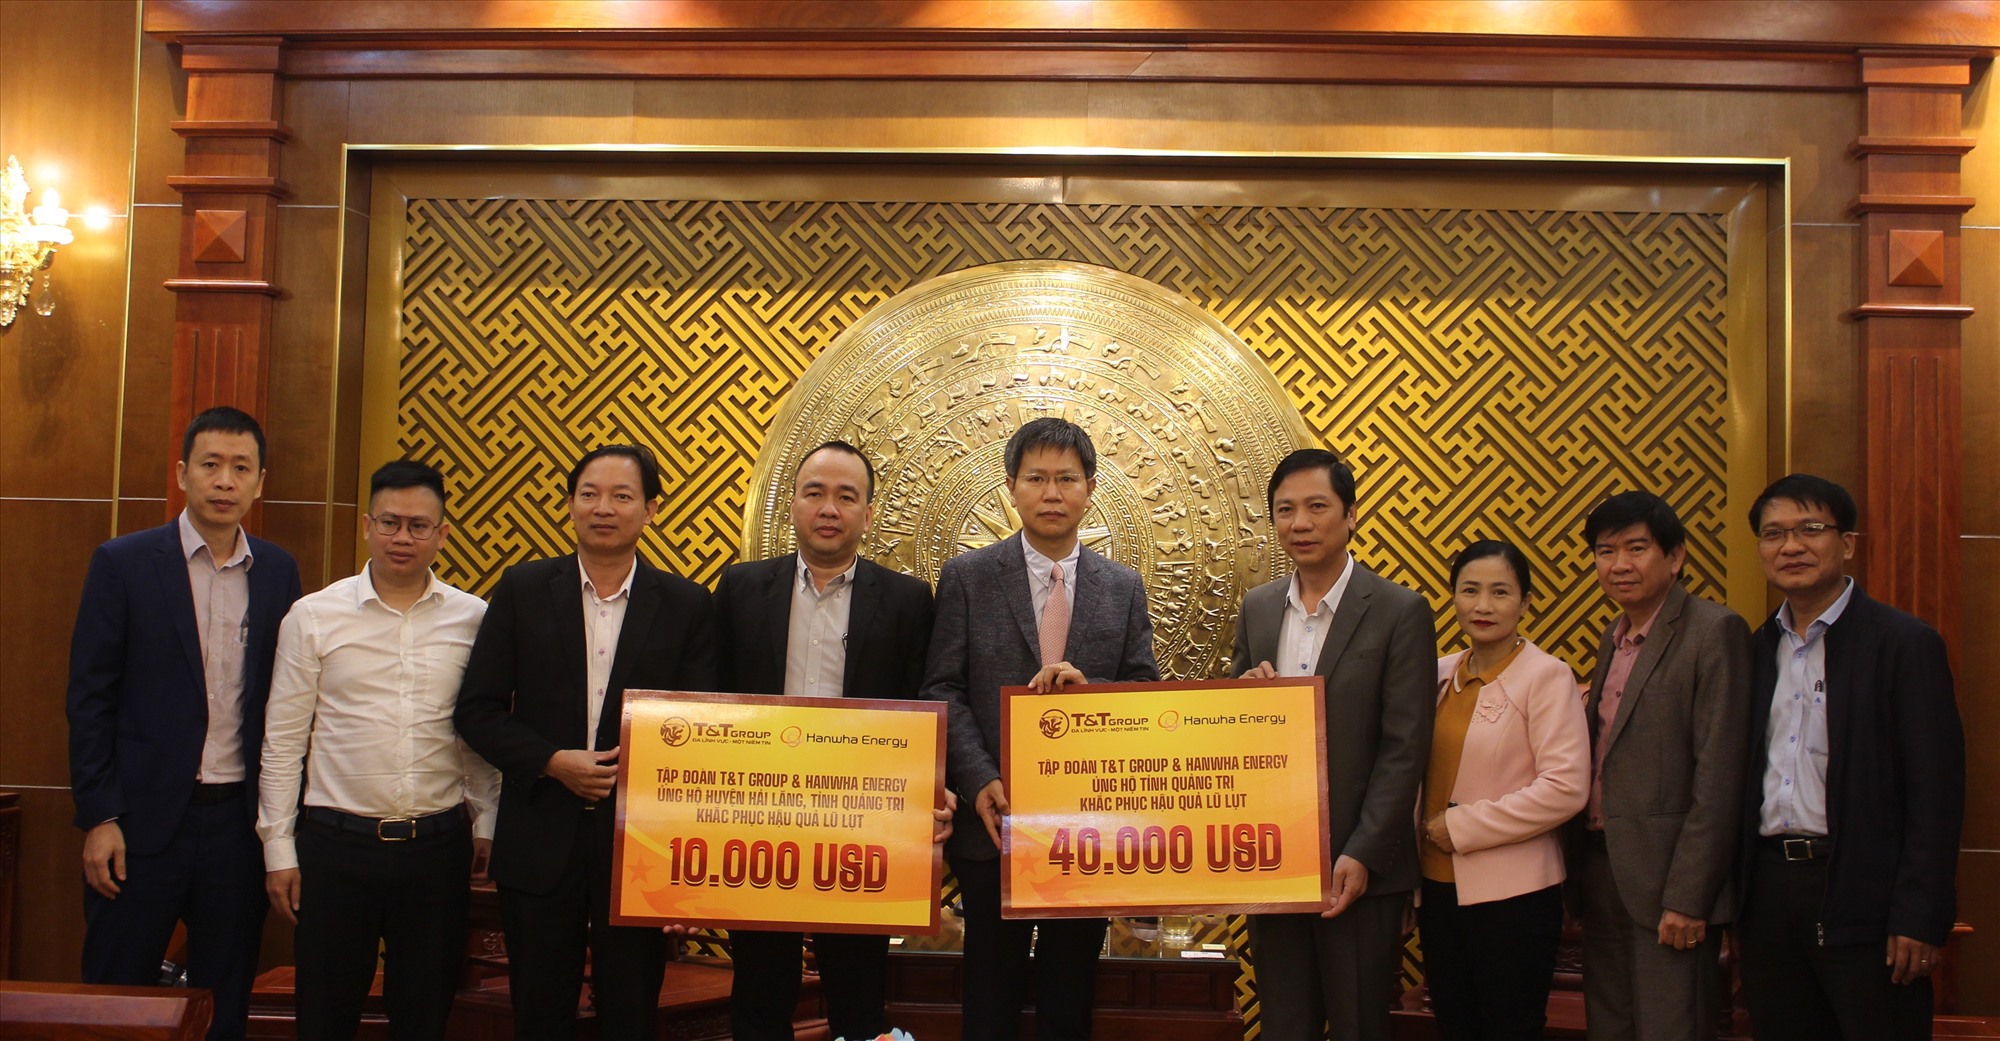 Đại diện Tập đoàn T&T Group và Công ty Hanwha Energy trao biển tượng trưng hỗ trợ tỉnh Quảng Trị 50.000 USD khắc phục hậu quả bão lụt -Ảnh: T.T